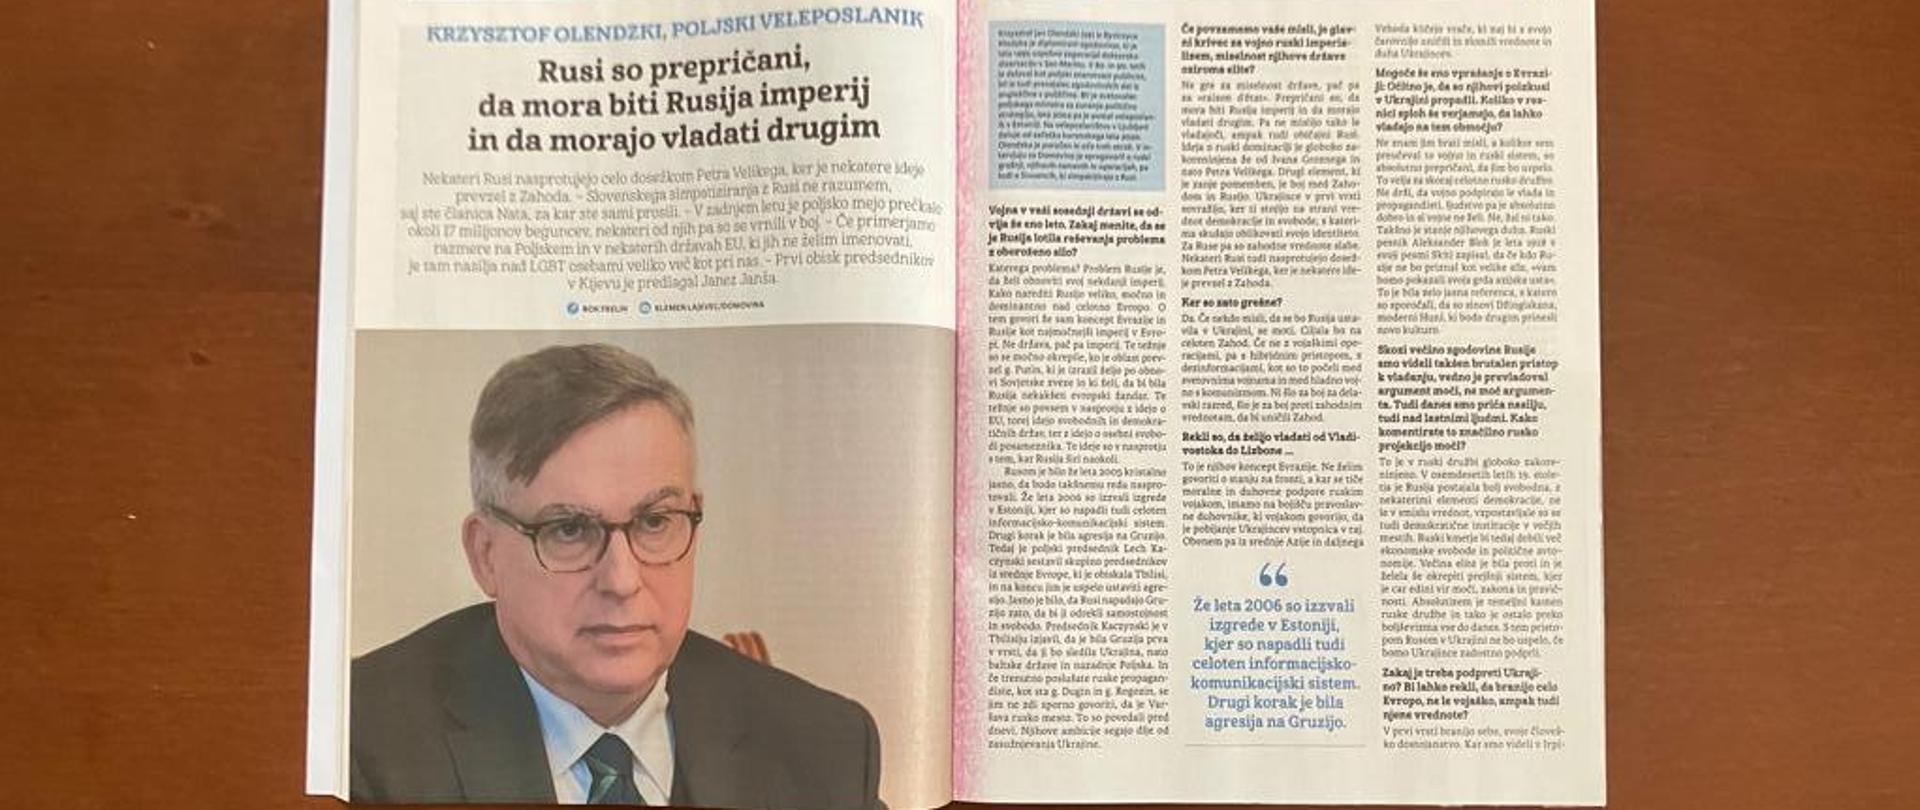 Wywiad Ambasadora Krzysztofa Olendzkiego dla Tygodnika Domovina